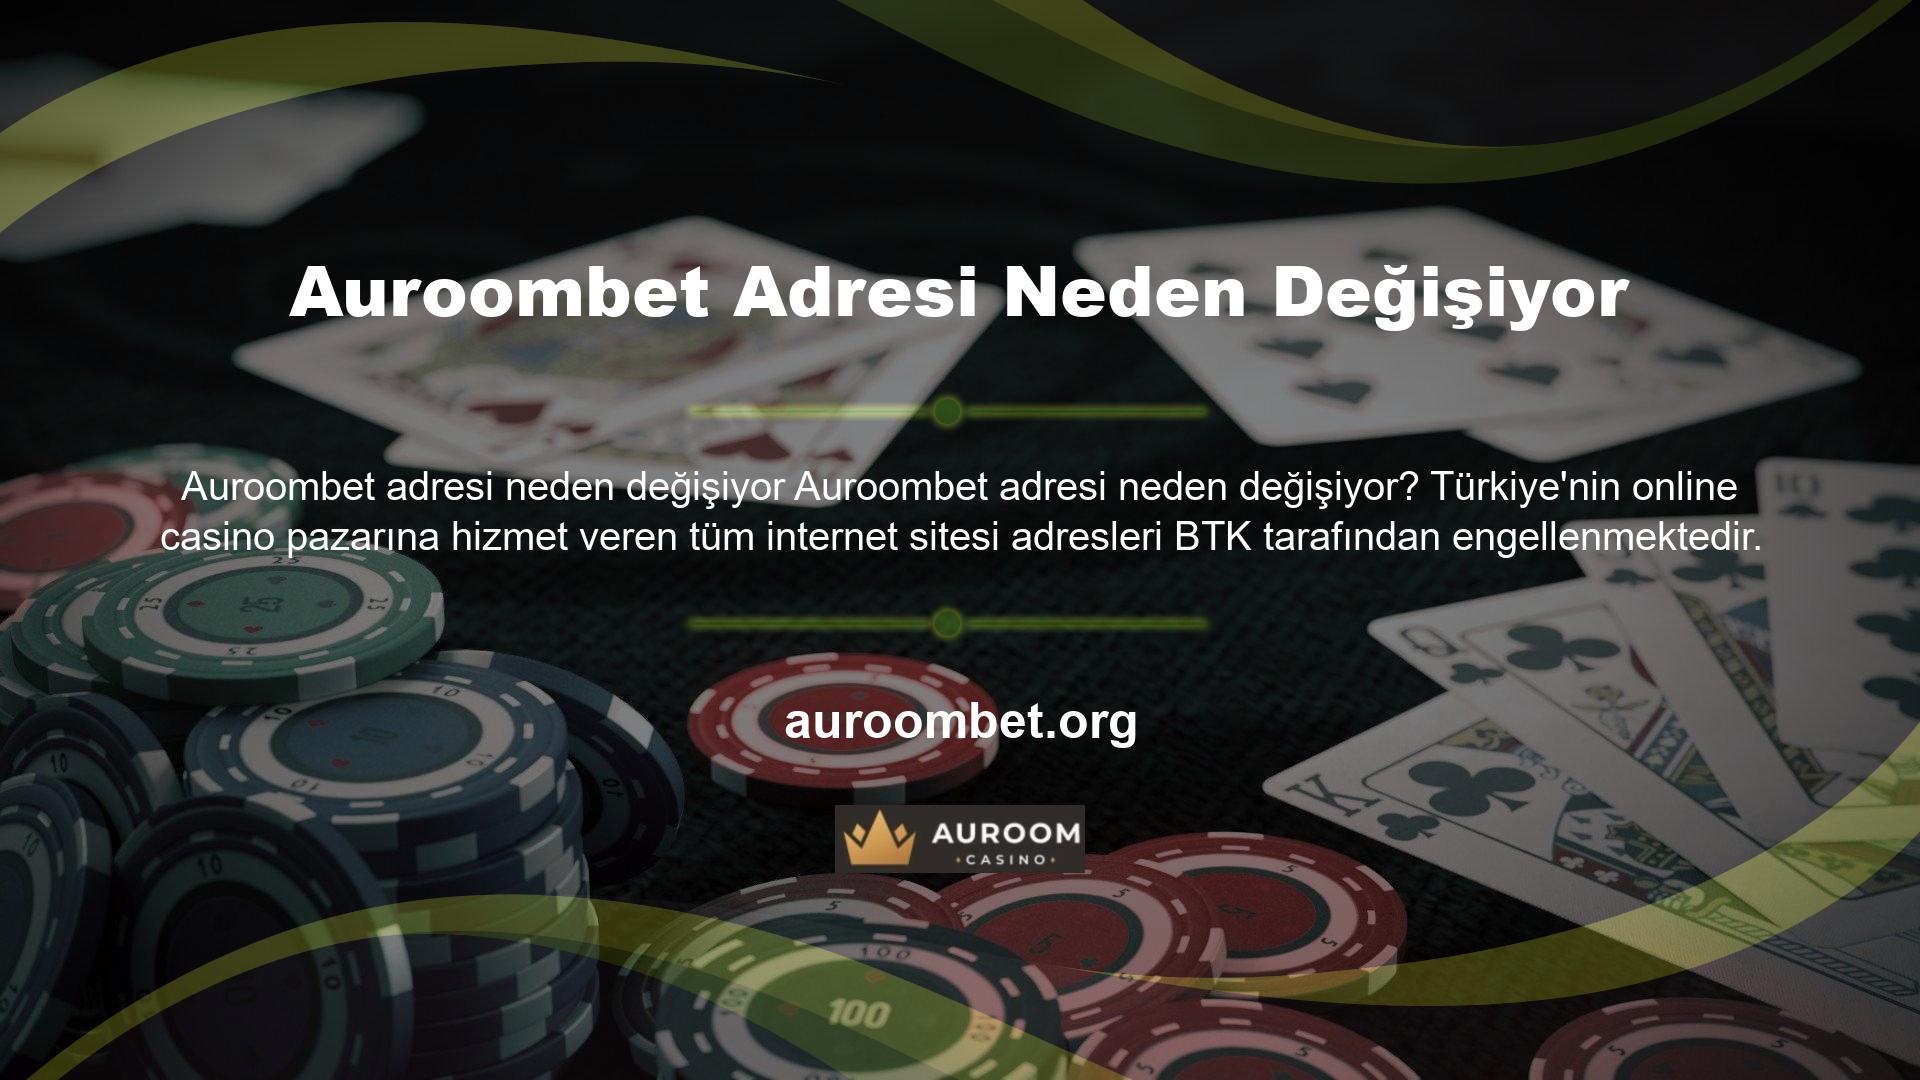 Bunun temel nedeni, çevrimiçi casinonun Türkiye'de yasal olmamasıdır